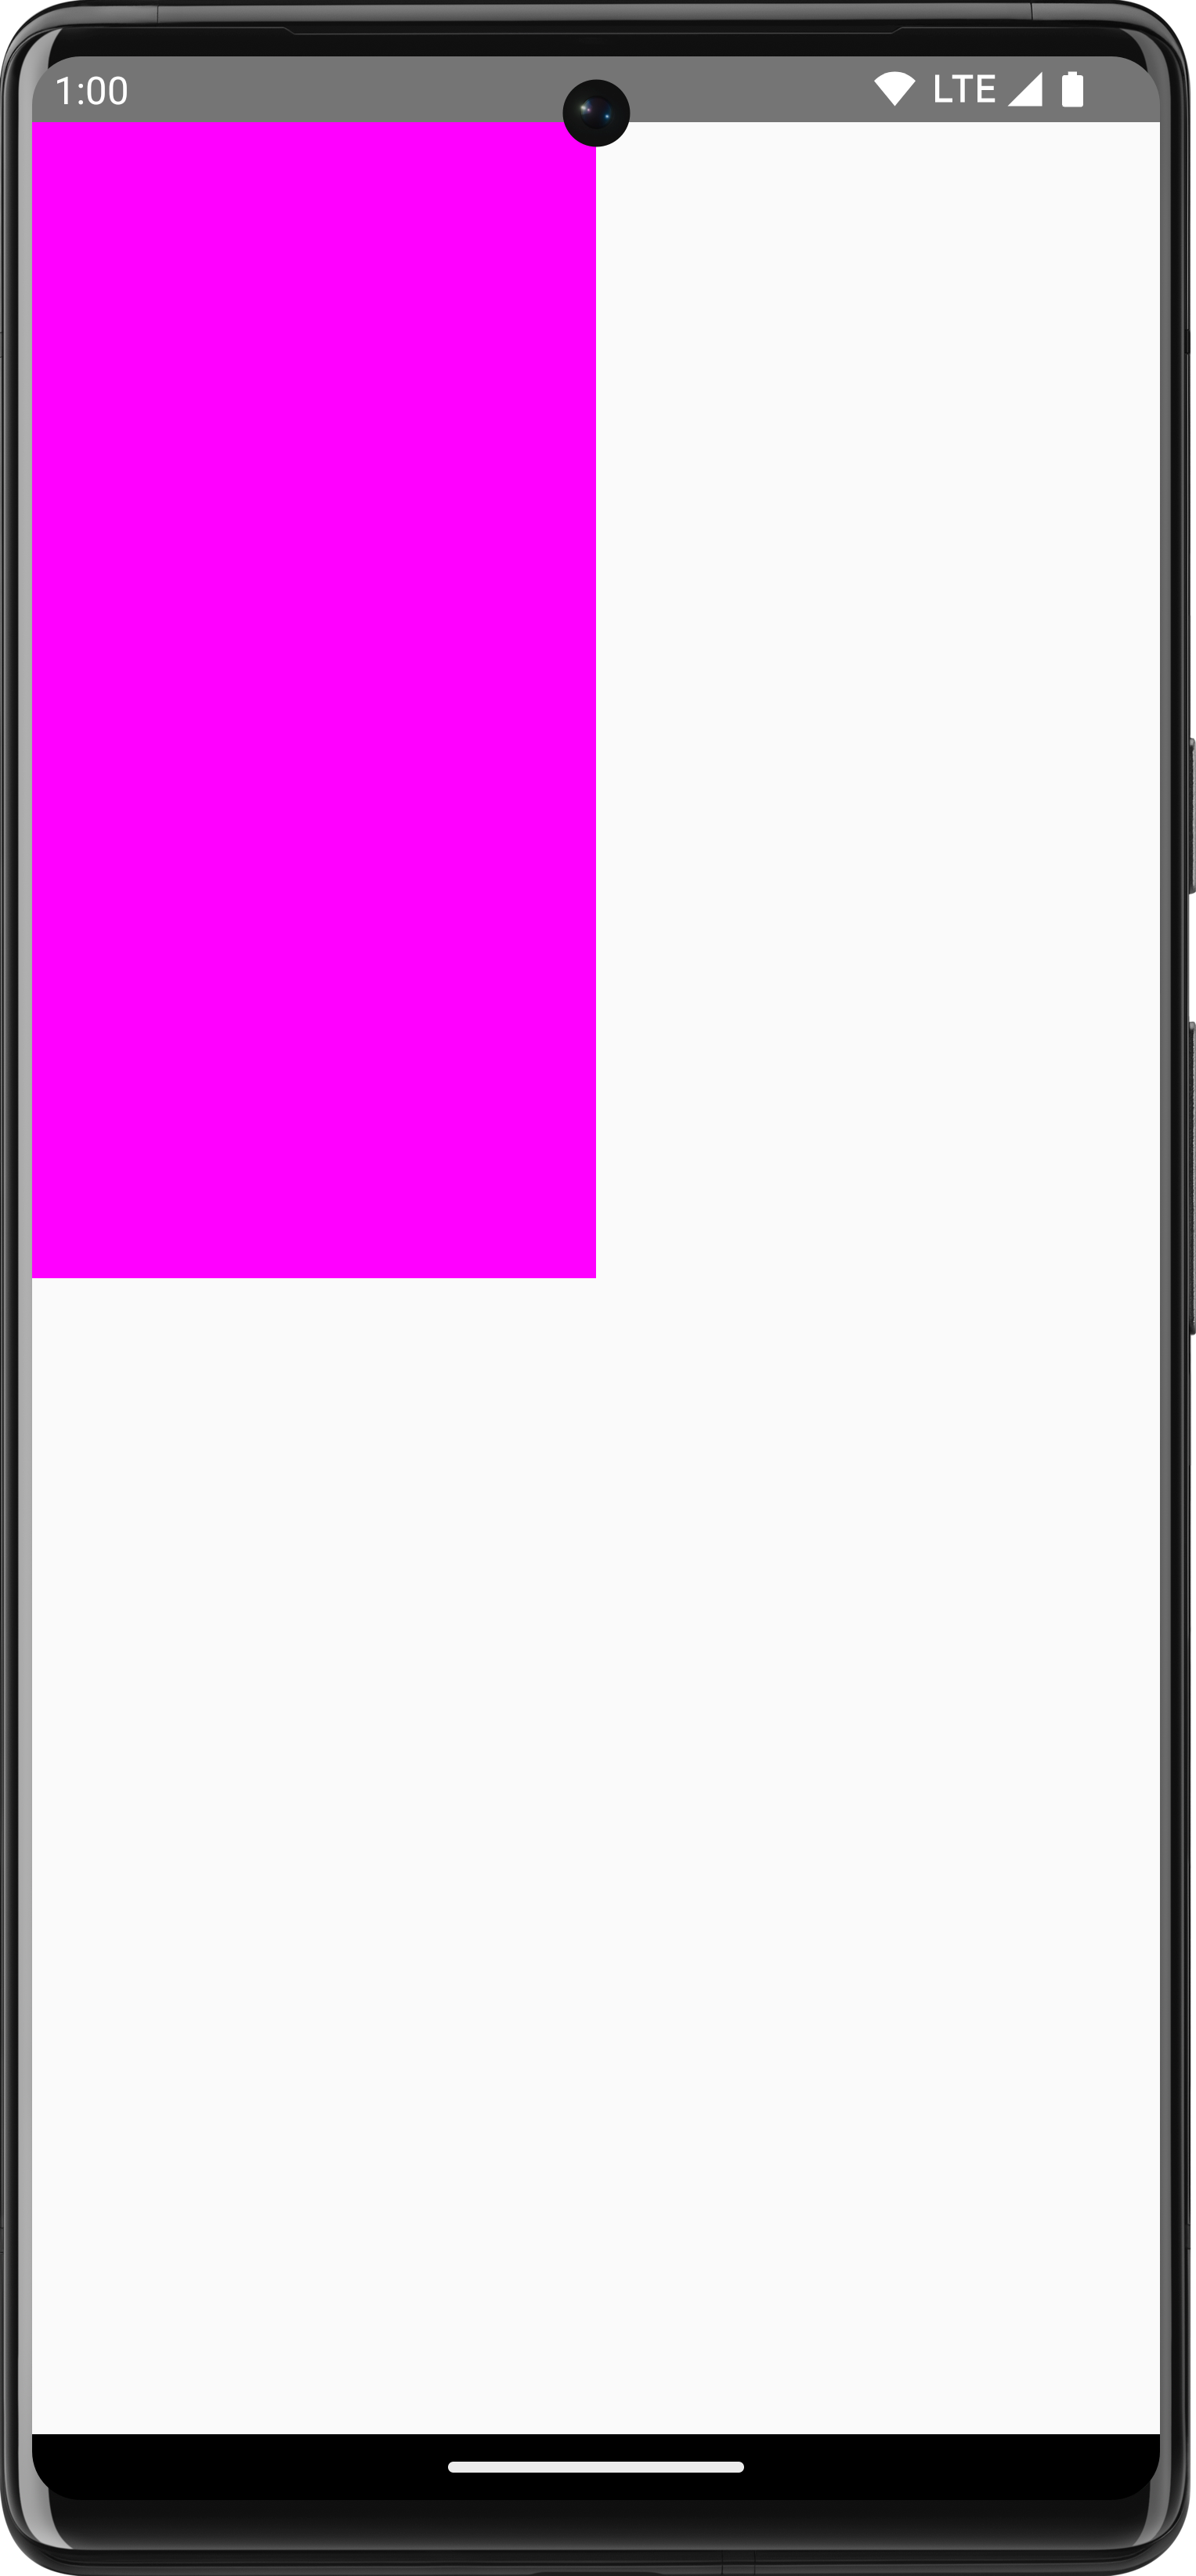 白い背景上に画面の 1/4 を占めるように描画されたピンクの長方形